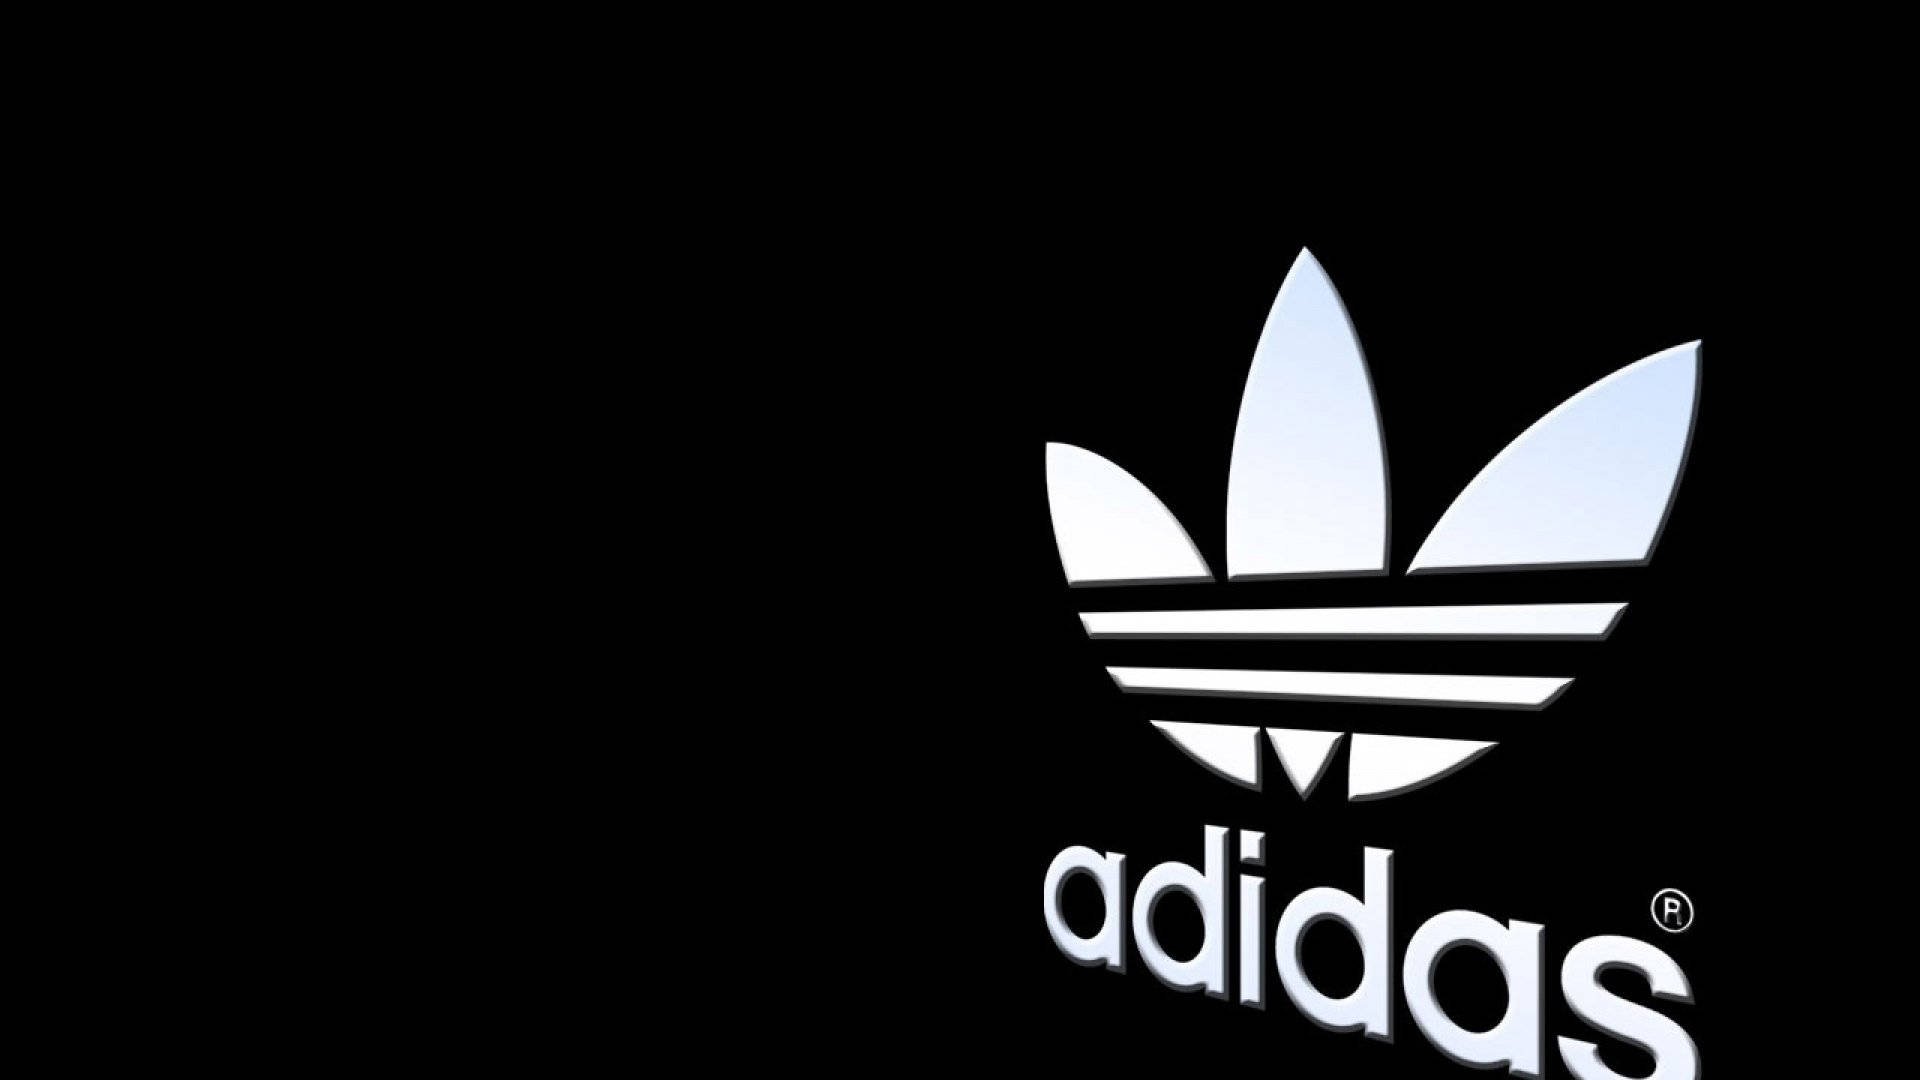 Unique Adidas Logo Background